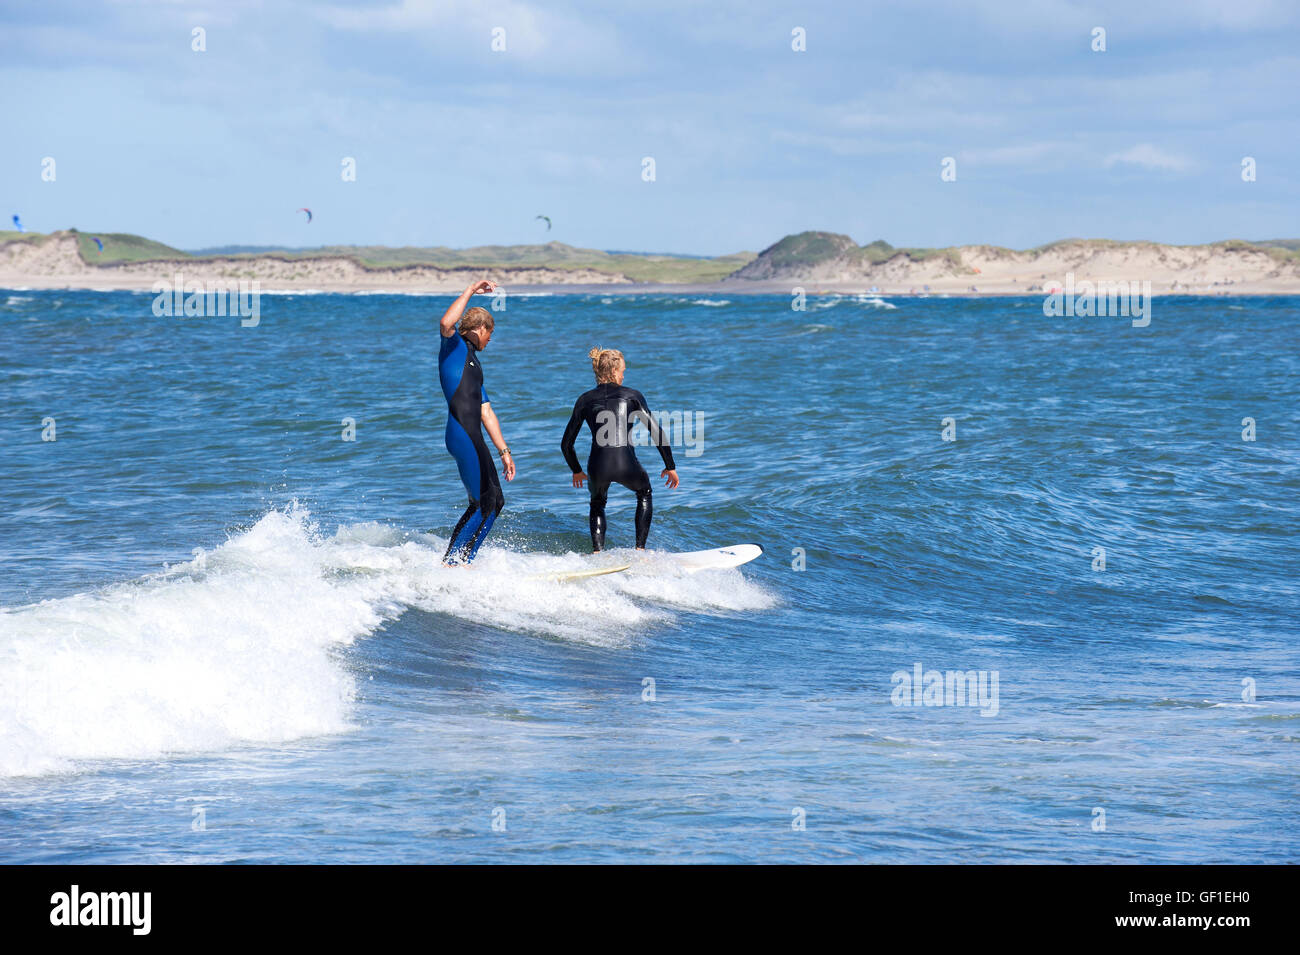 Surfen in den Gewässern der Nordsee vor der Küste West - Jütland, Dänemark Klitmøller (AKA "Cold Hawaii"). Stockfoto